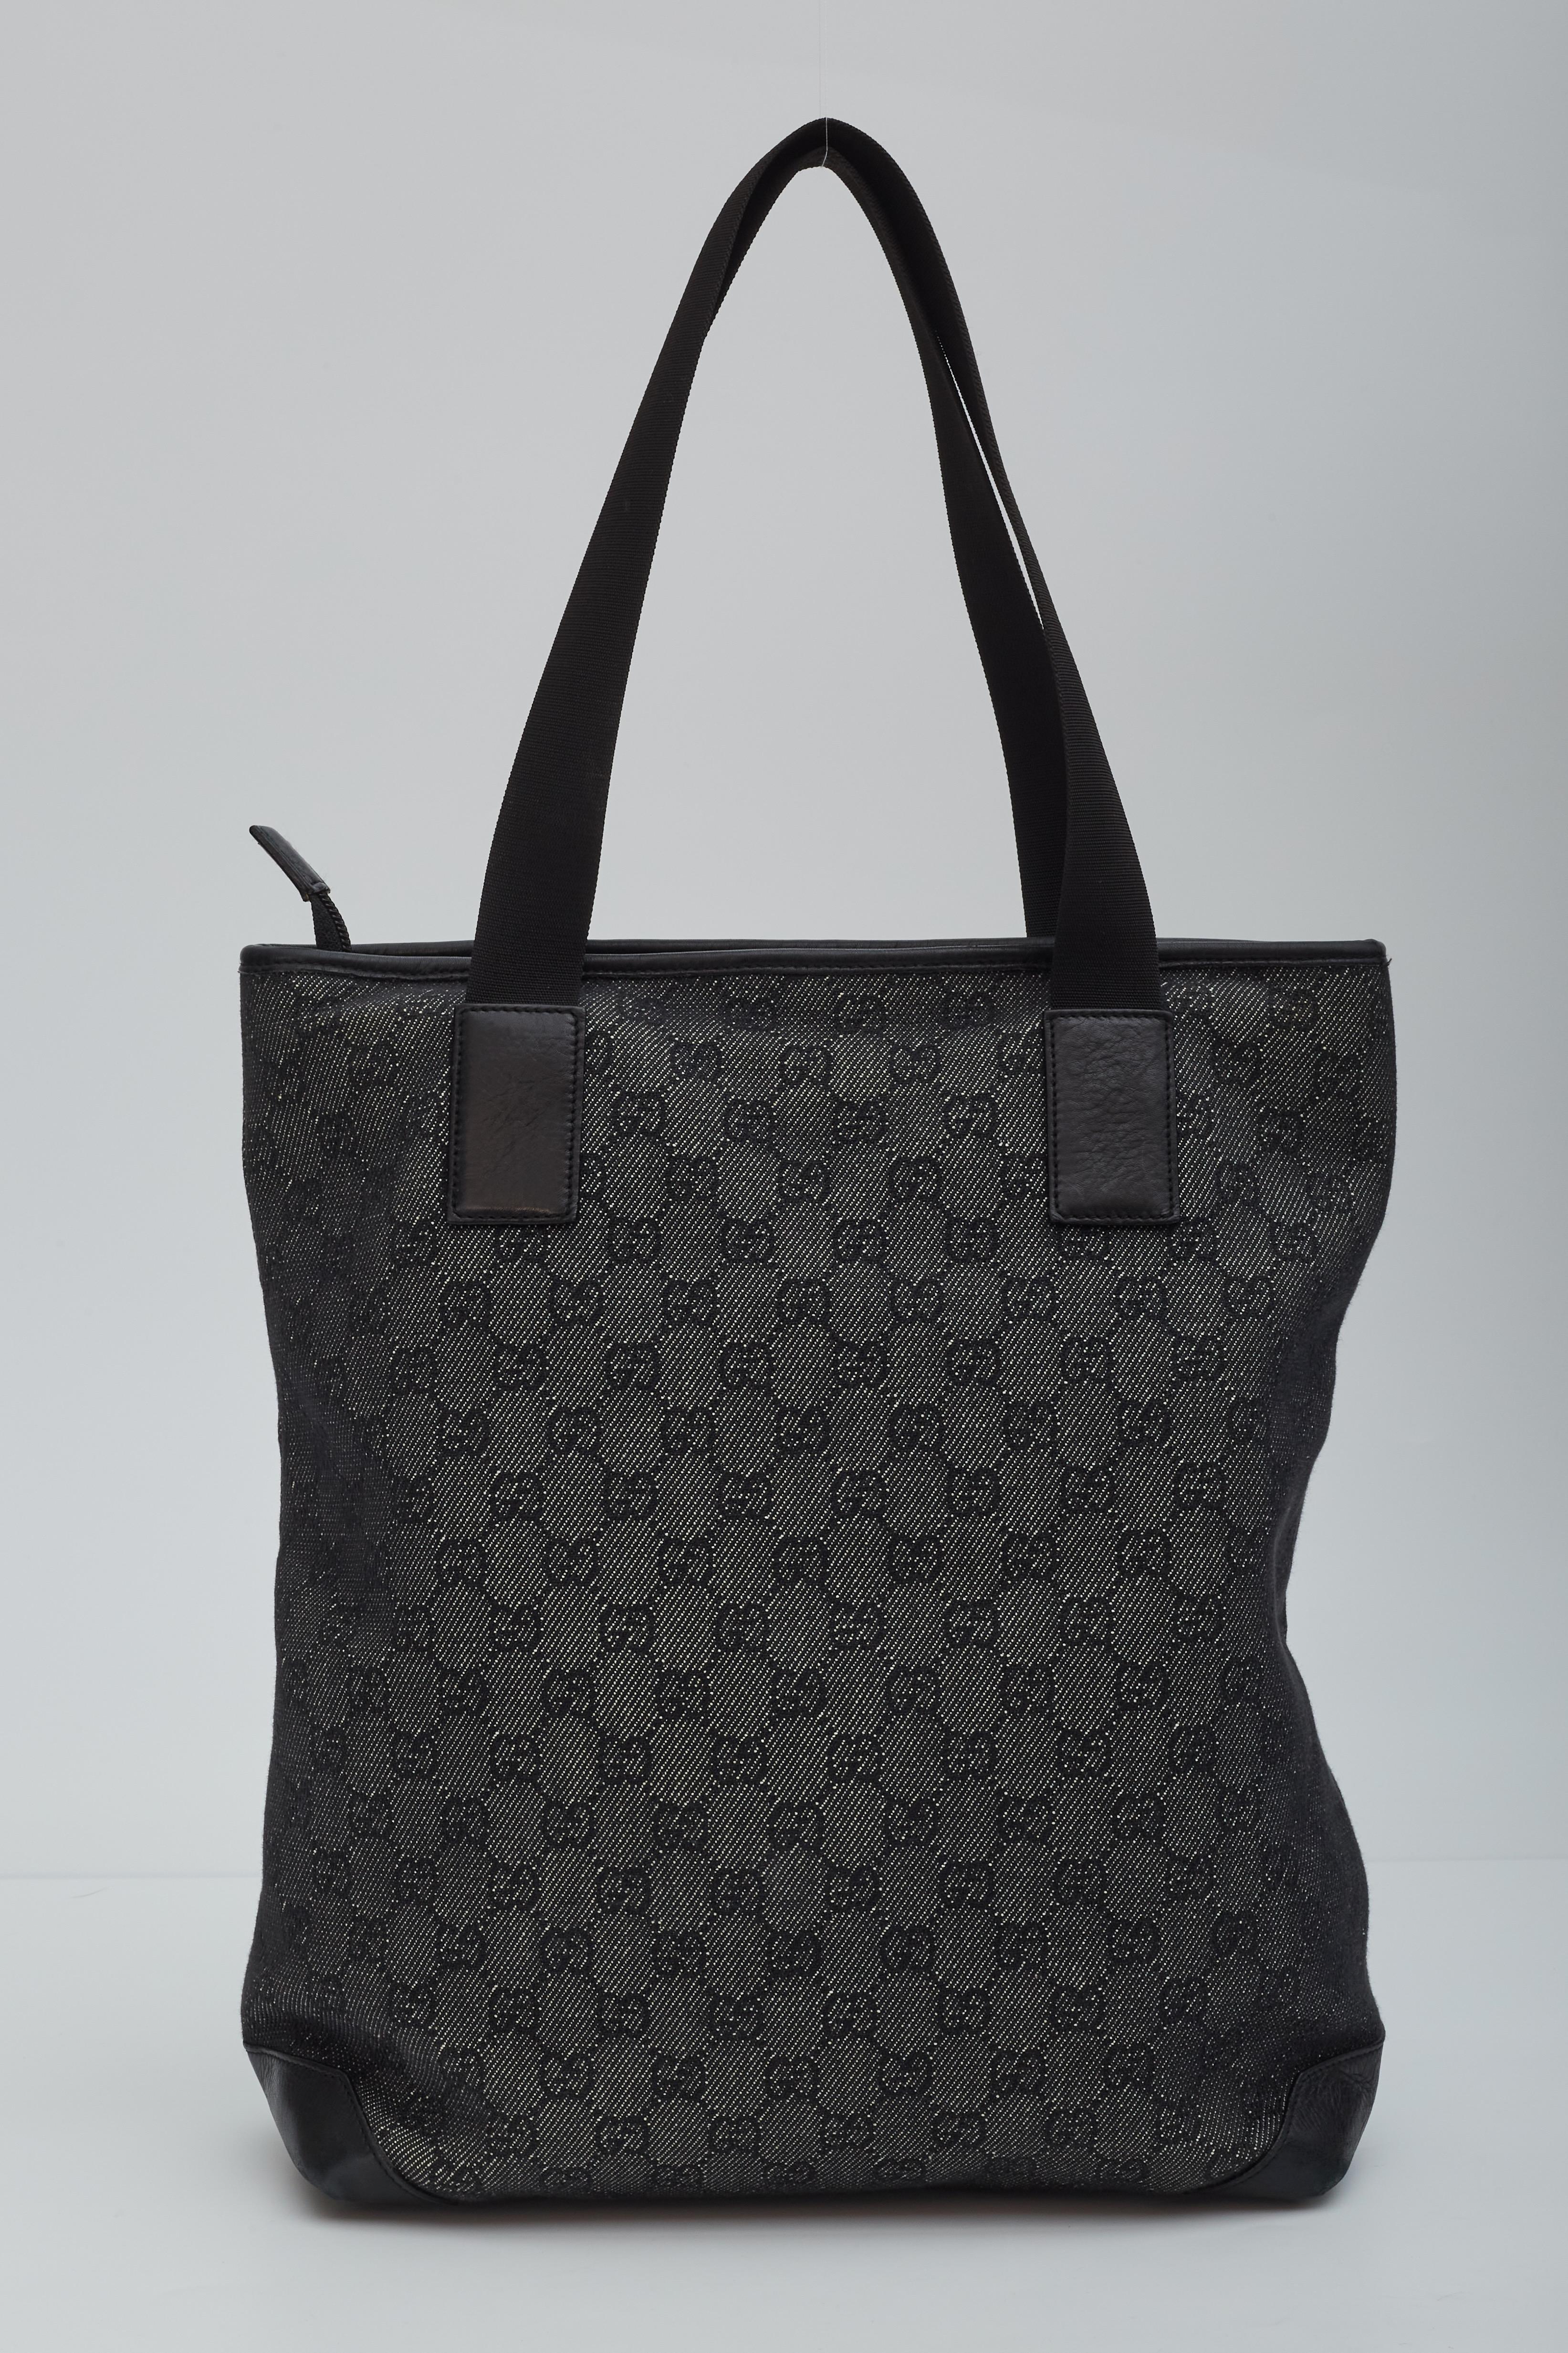 Ce sac est fabriqué à partir du monogramme noir classique Gucci GG sur toile. Le sac est doté de garnitures en cuir noir lisse, y compris les coins de la base, d'une grande poche extérieure à fermeture éclair et d'ancrages qui fixent les bretelles